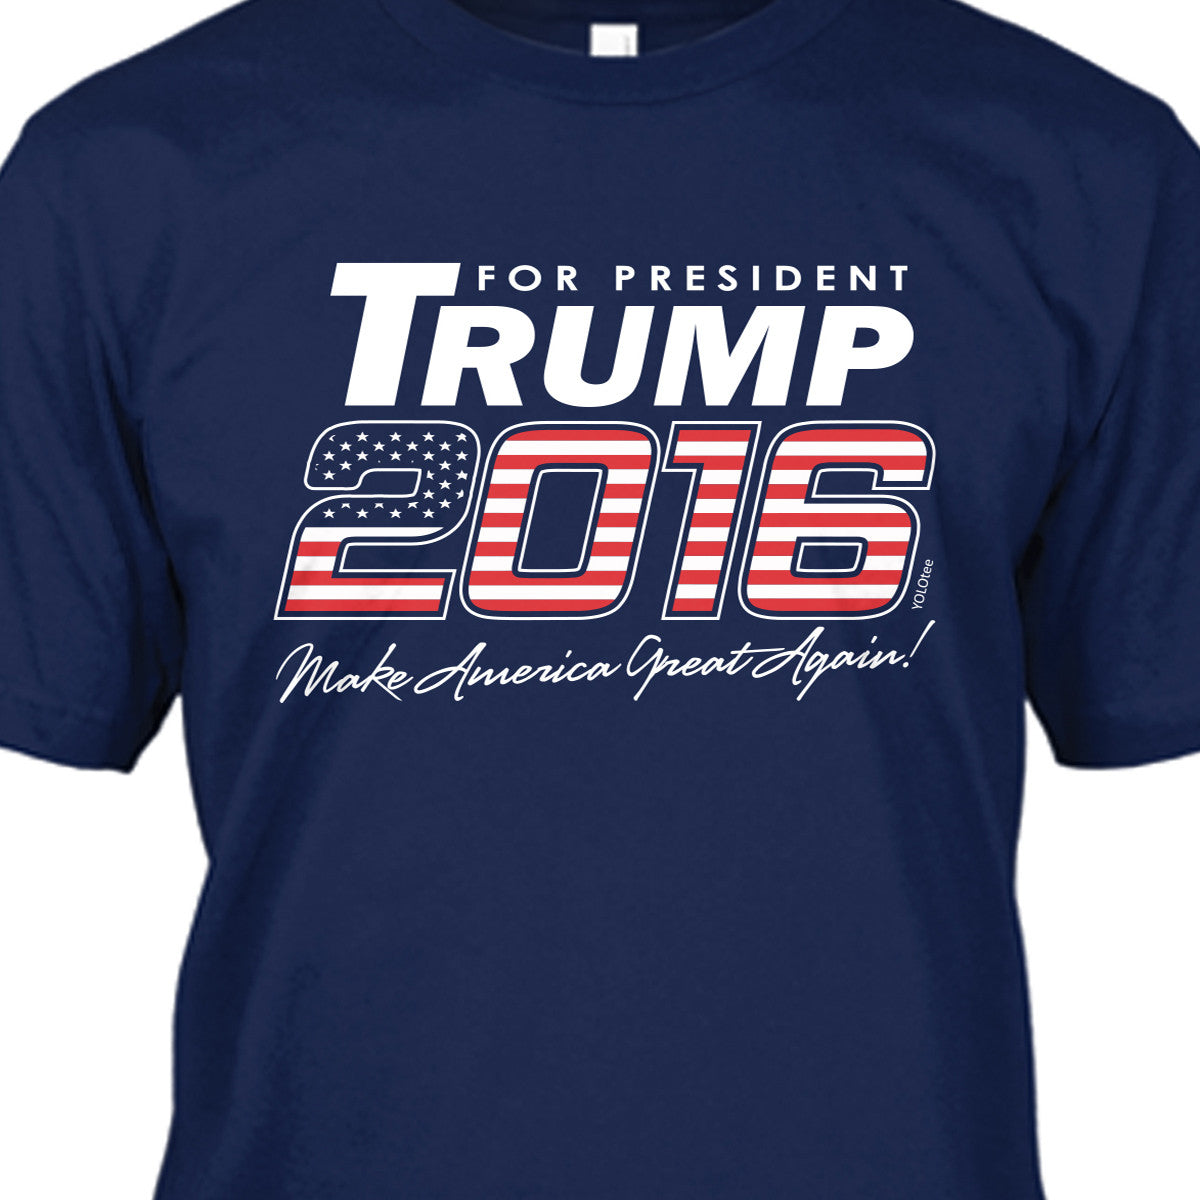 Make America Great Again Premium Shirt